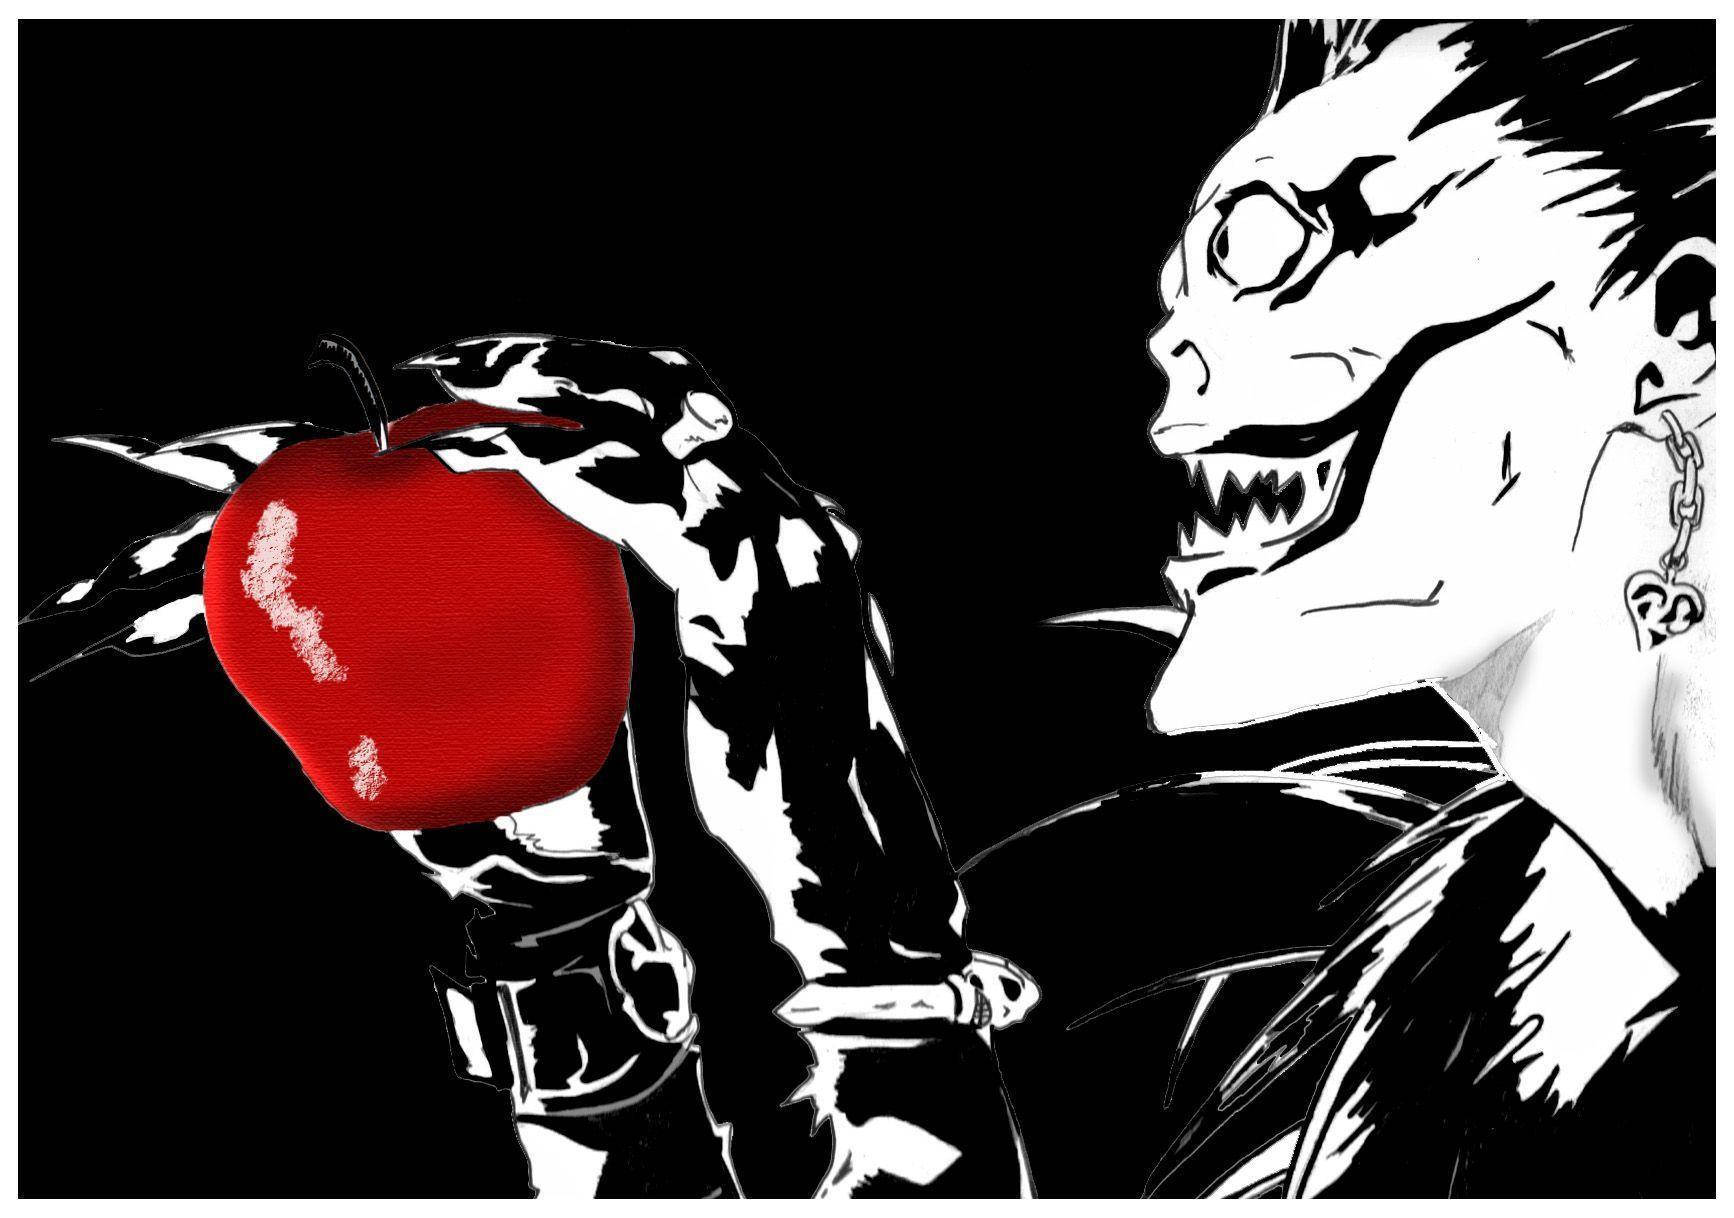 Ryuk Loves Red Apples